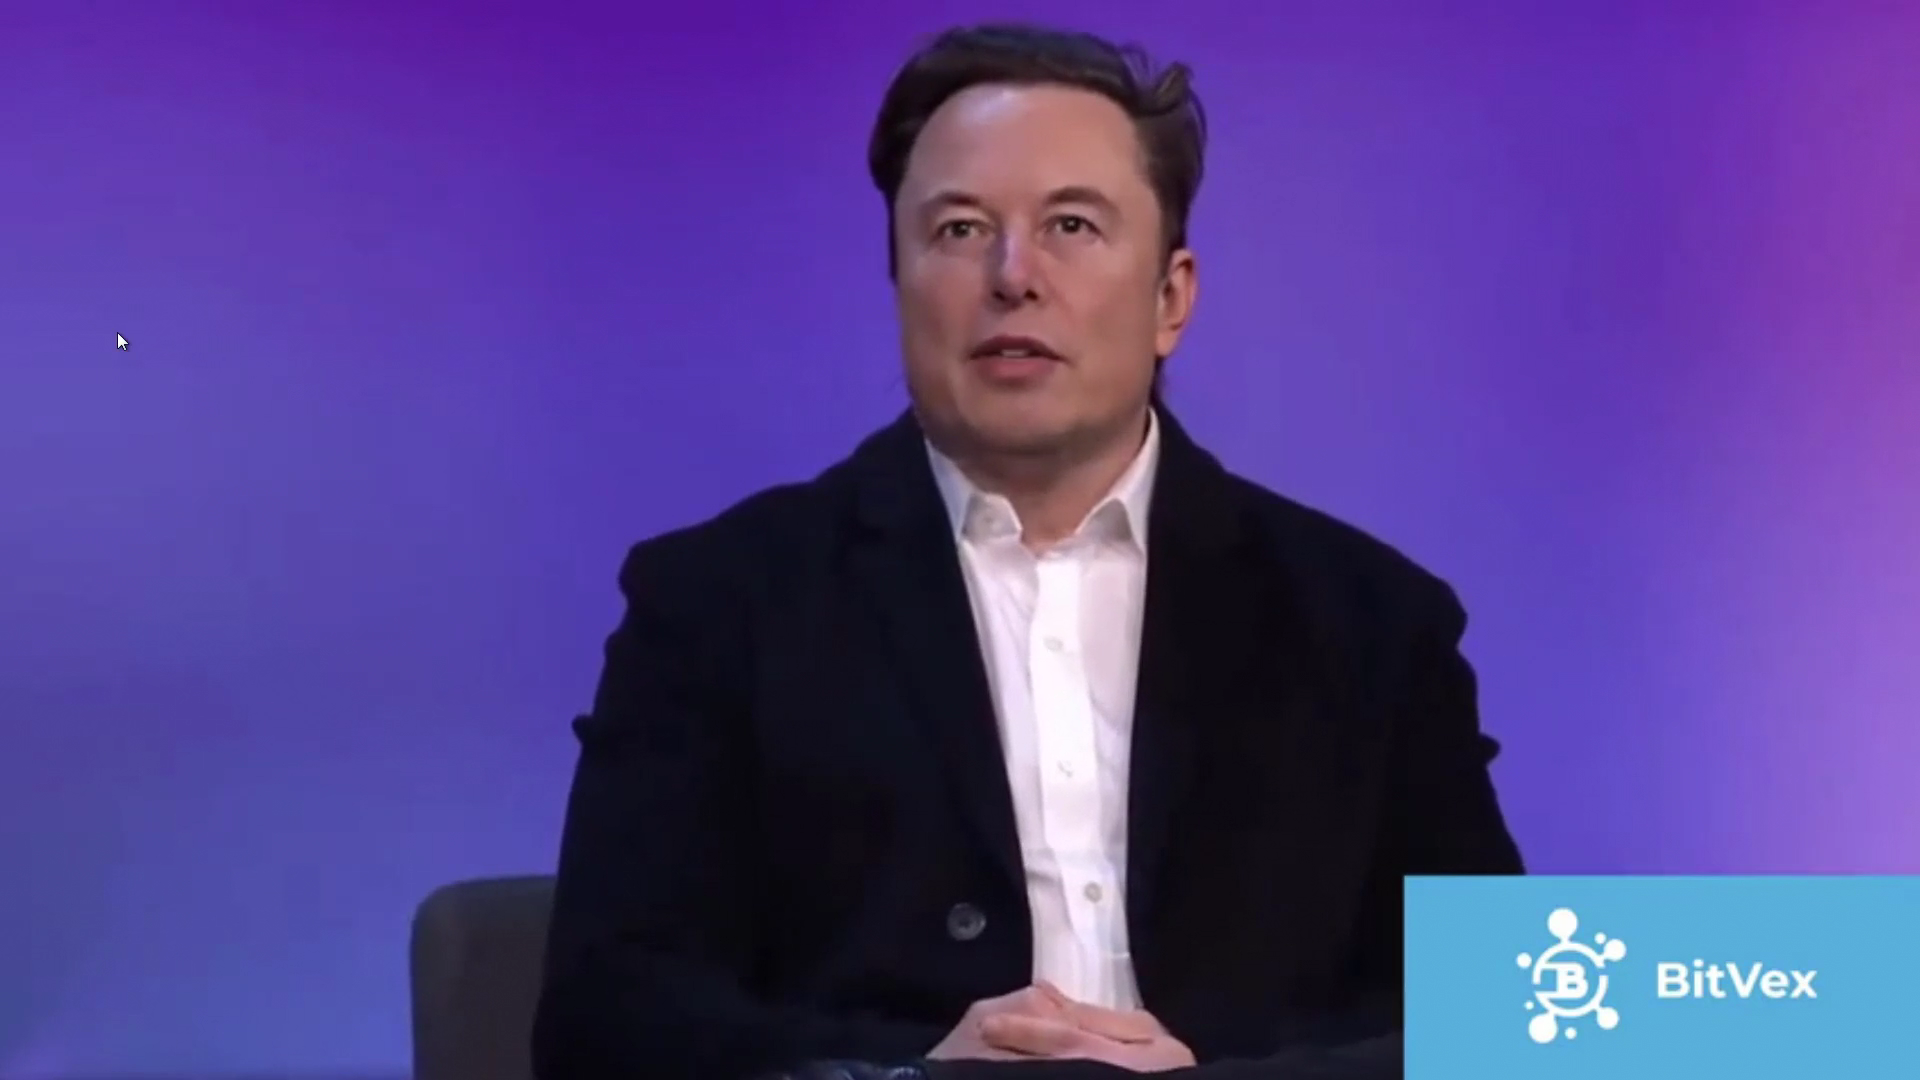 El video con una versión deep fake de Elon Musk circuló por la web